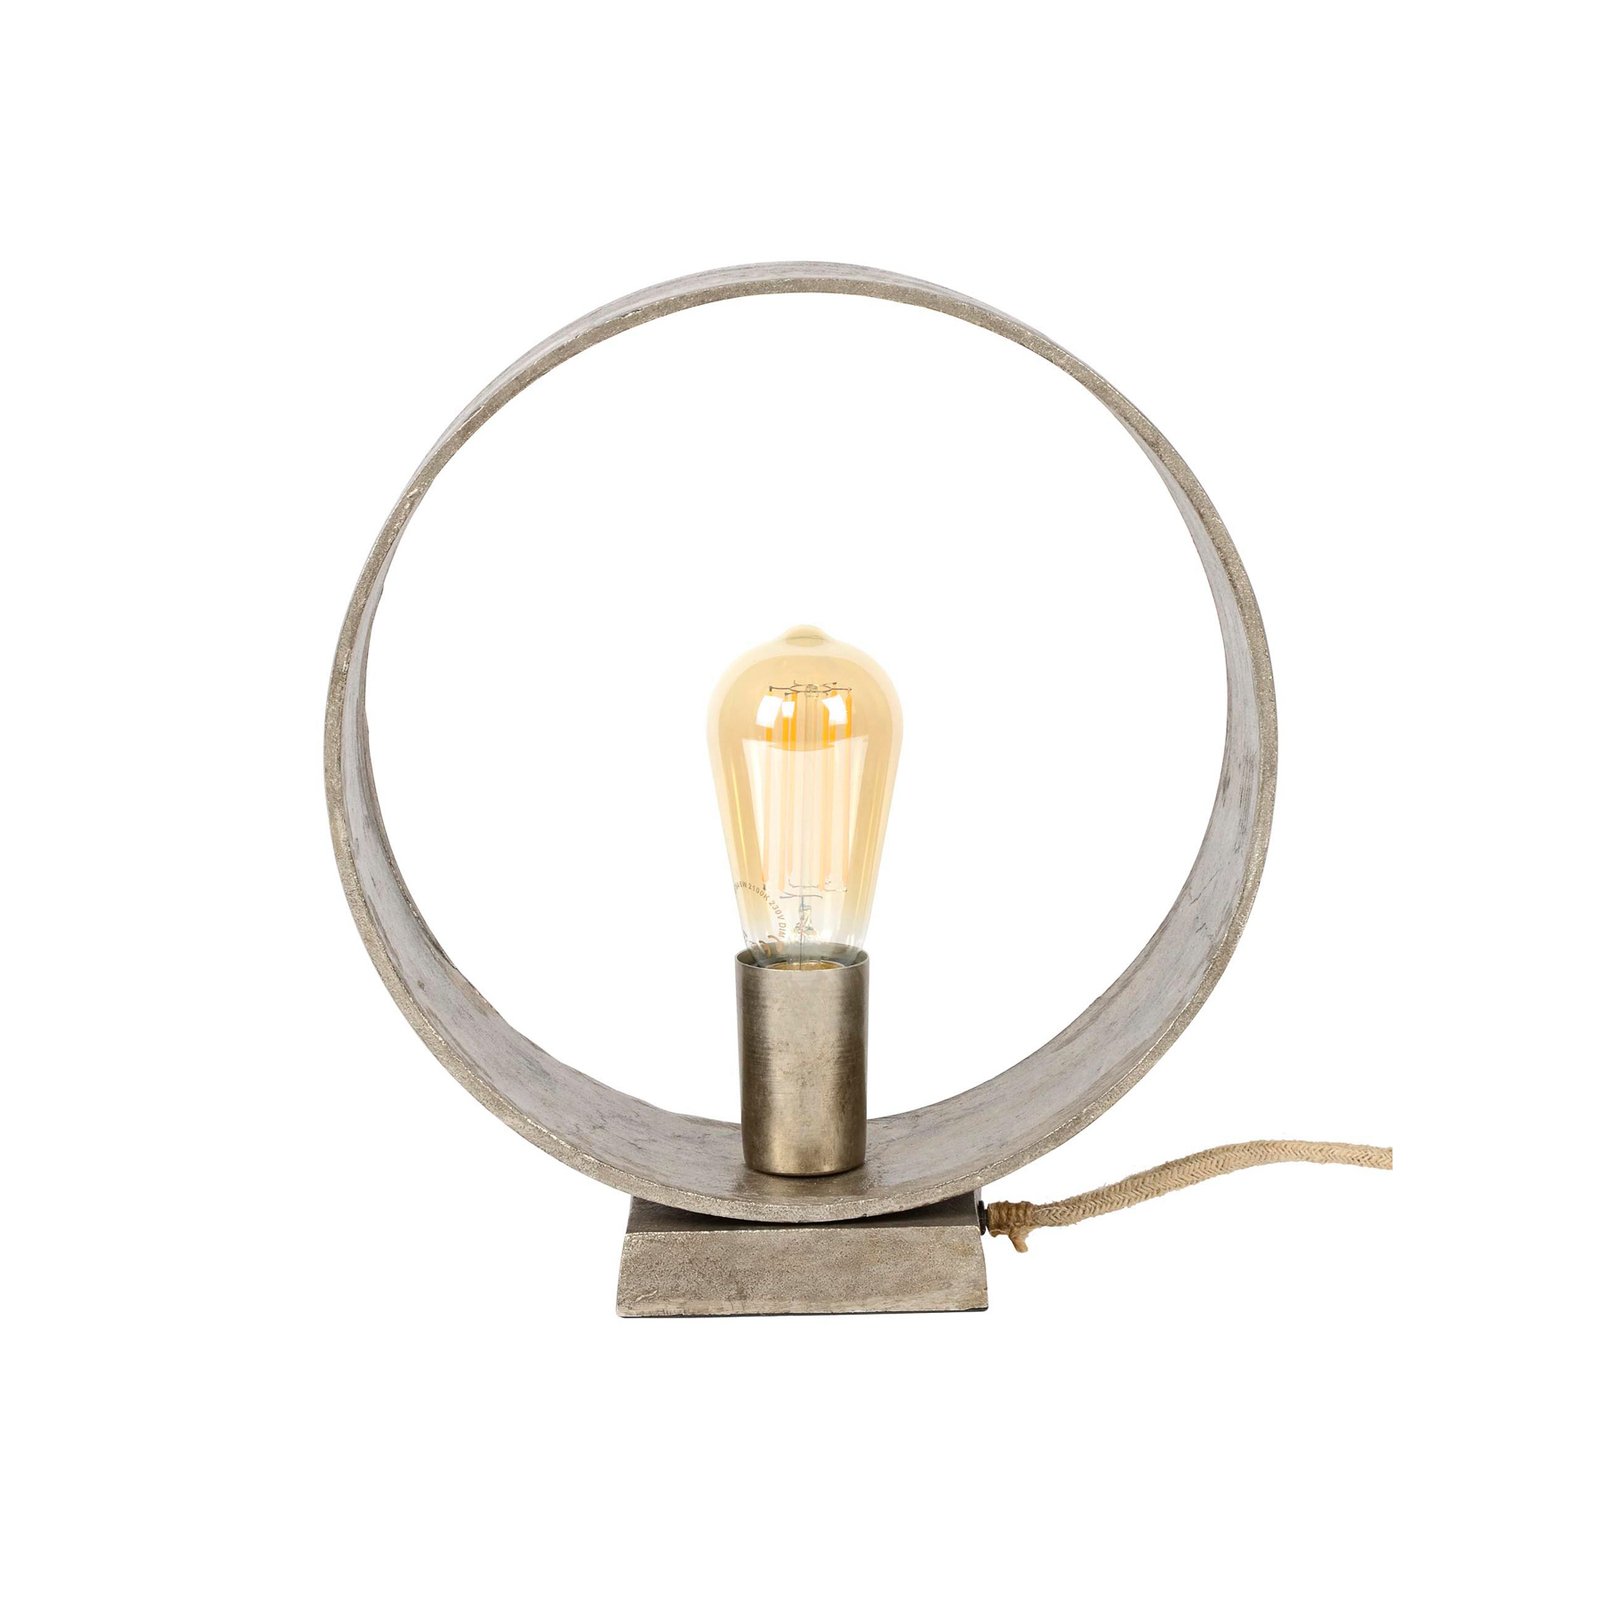 Roxton bordlampe, højde 32 cm, 1 lyskilde